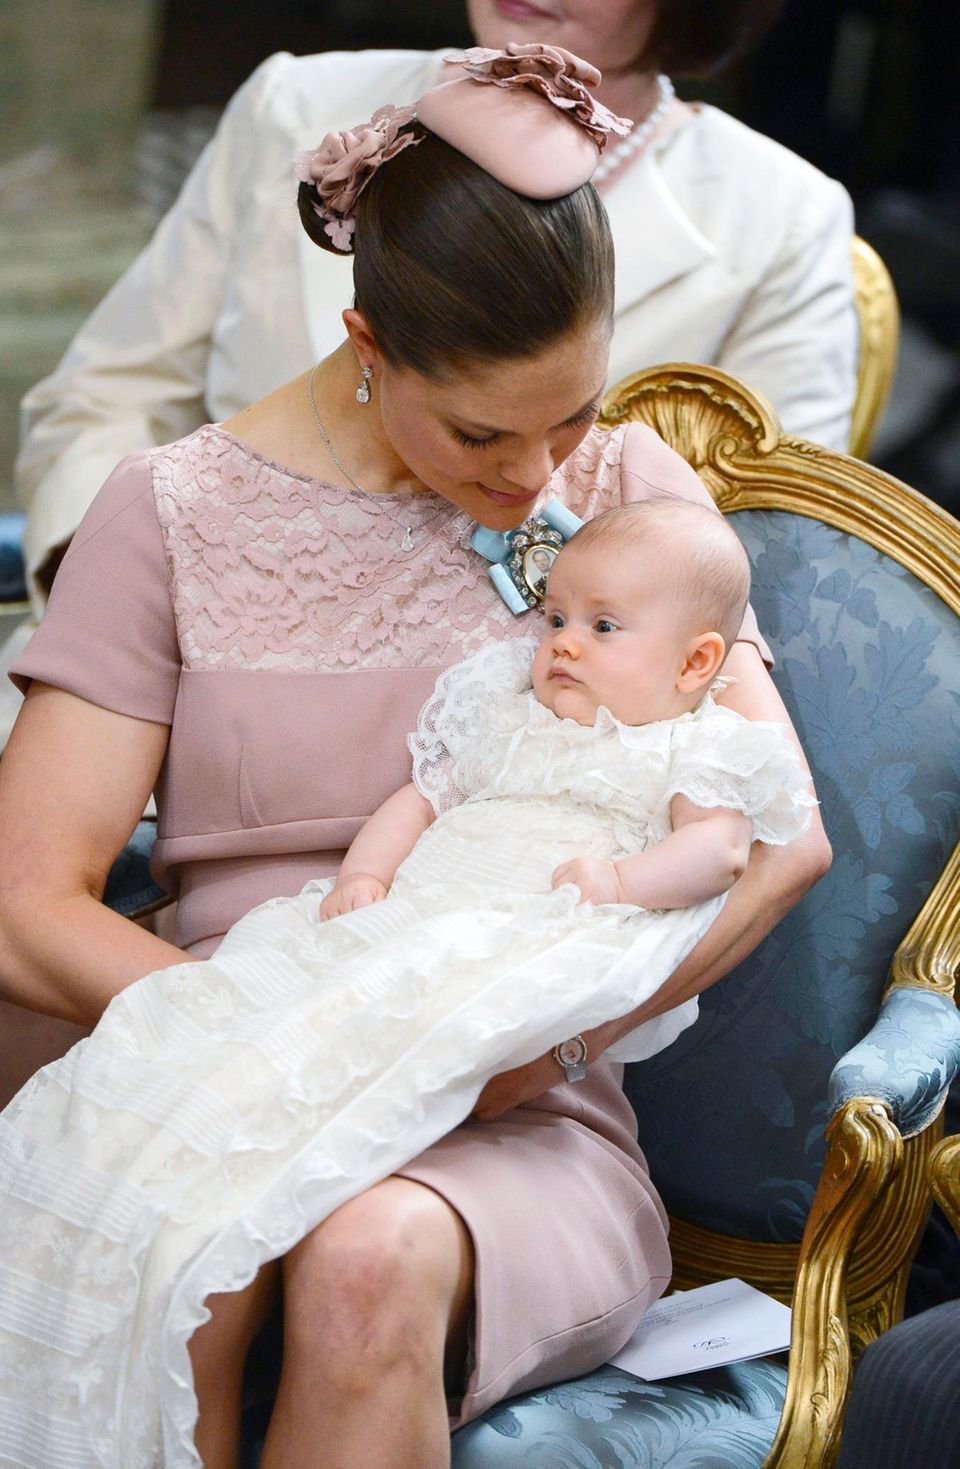 Ganz Prinzessin: Estelle bei ihrer Taufe im Mai 2012. Victoria trägt passend zum Geschlecht ihrer Tochter die Farbe Rosa.